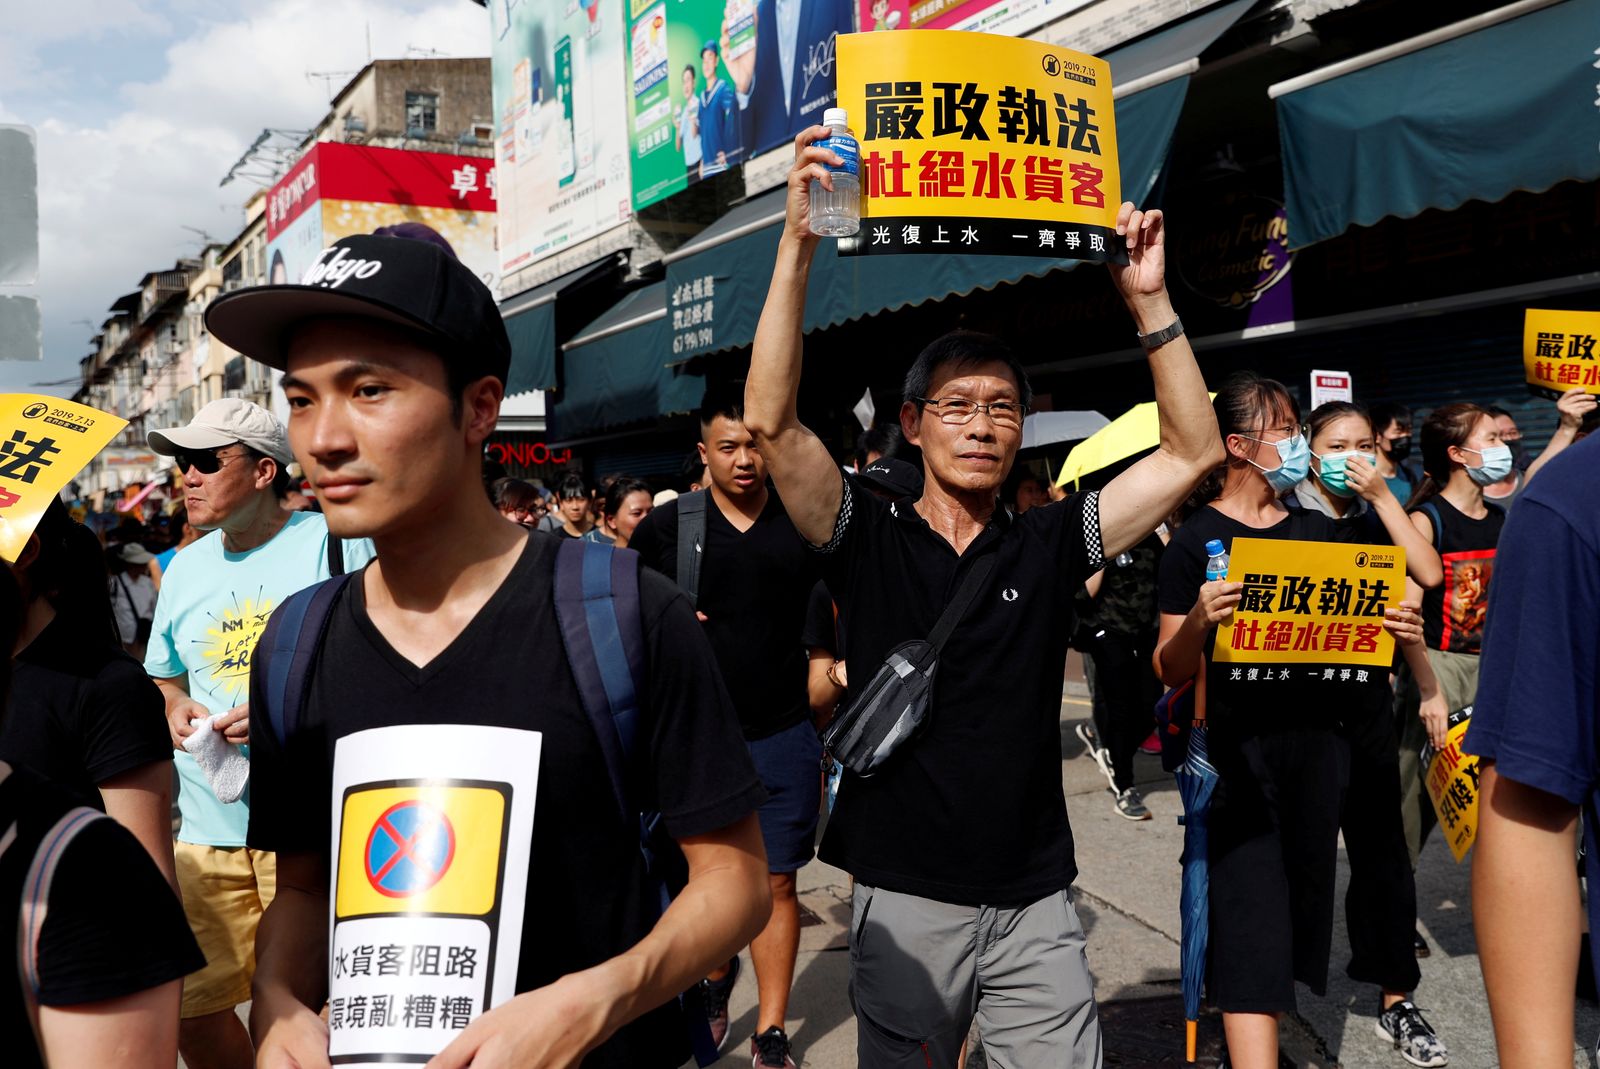 متظاهرون يشاركون في إحدى المسيرات السلمية في هونغ كونغ - REUTERS